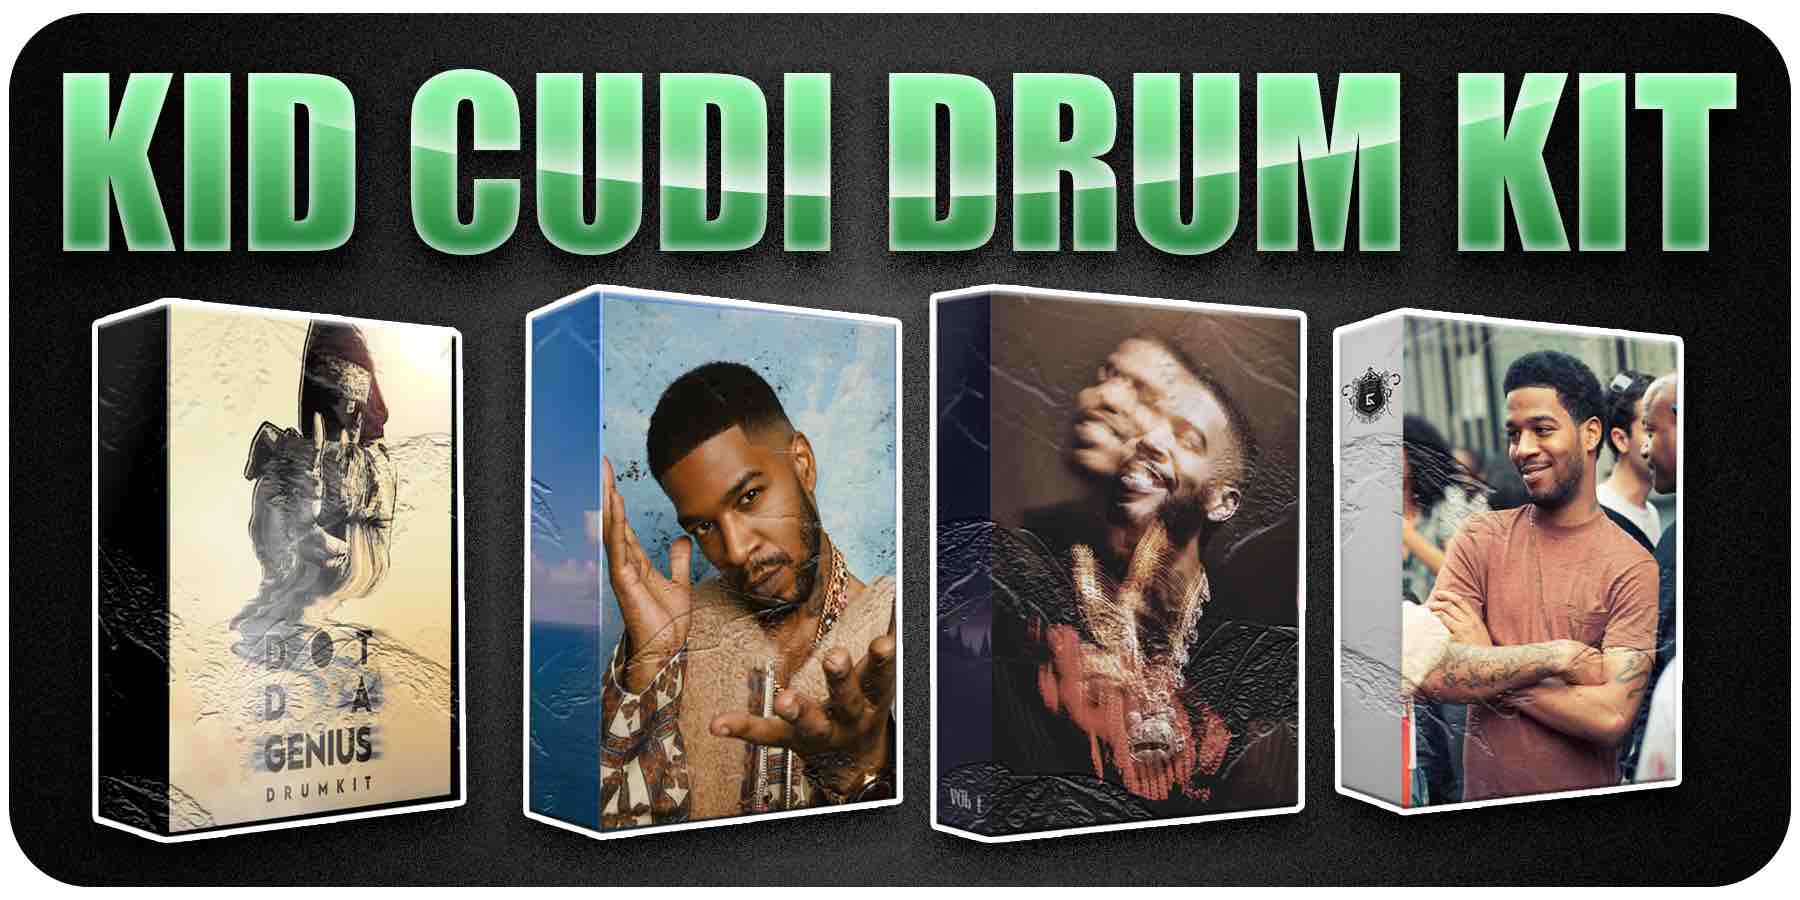 Free Kid Cudi Drum Kit Download